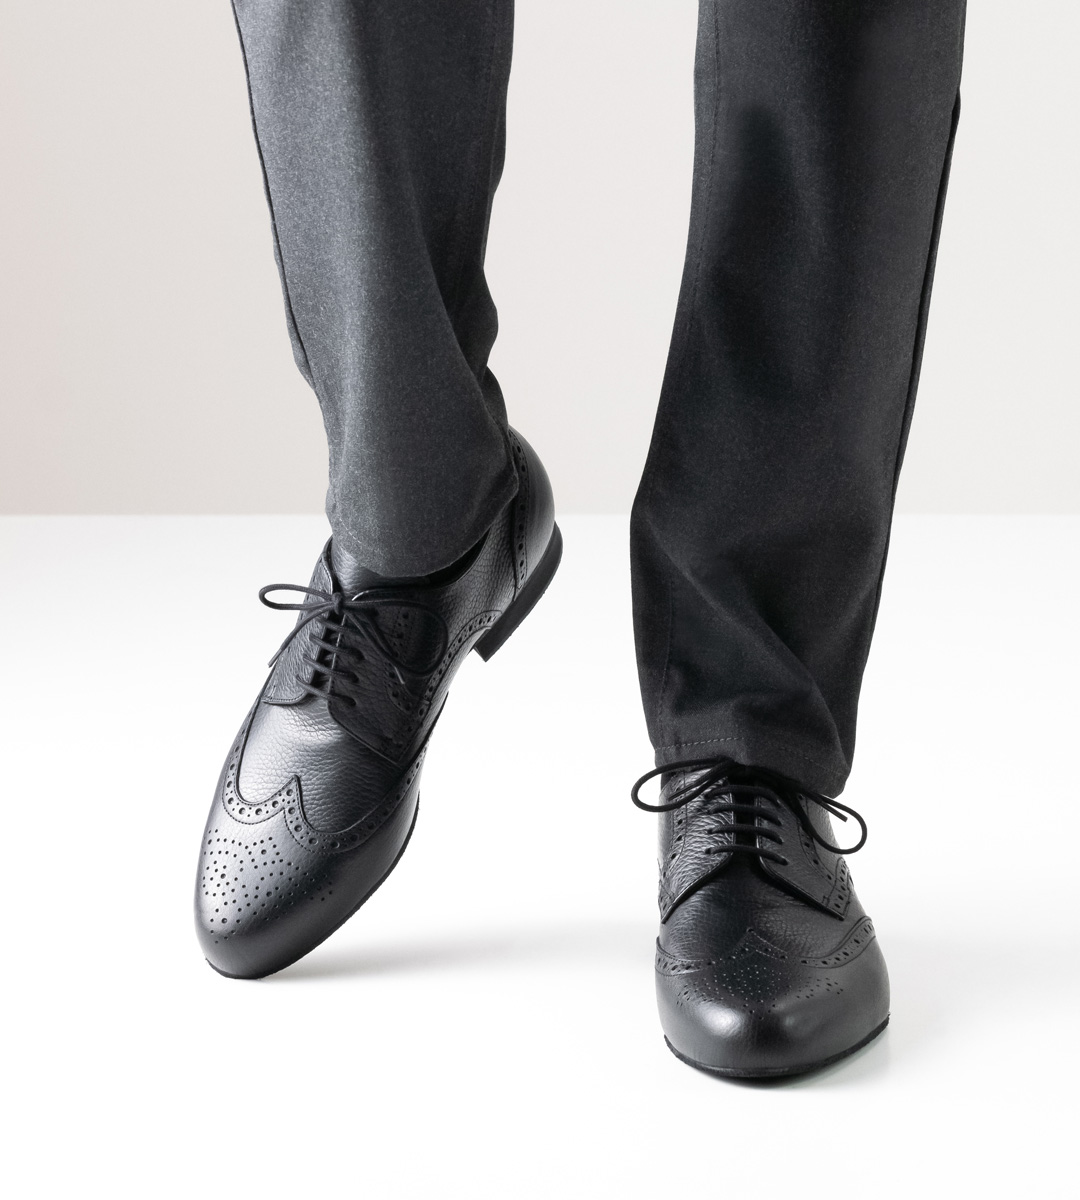 Herrentanzschuh in schwarzem Leder mit 2 cm hohem Absatz in Kombination mit grauer Hose